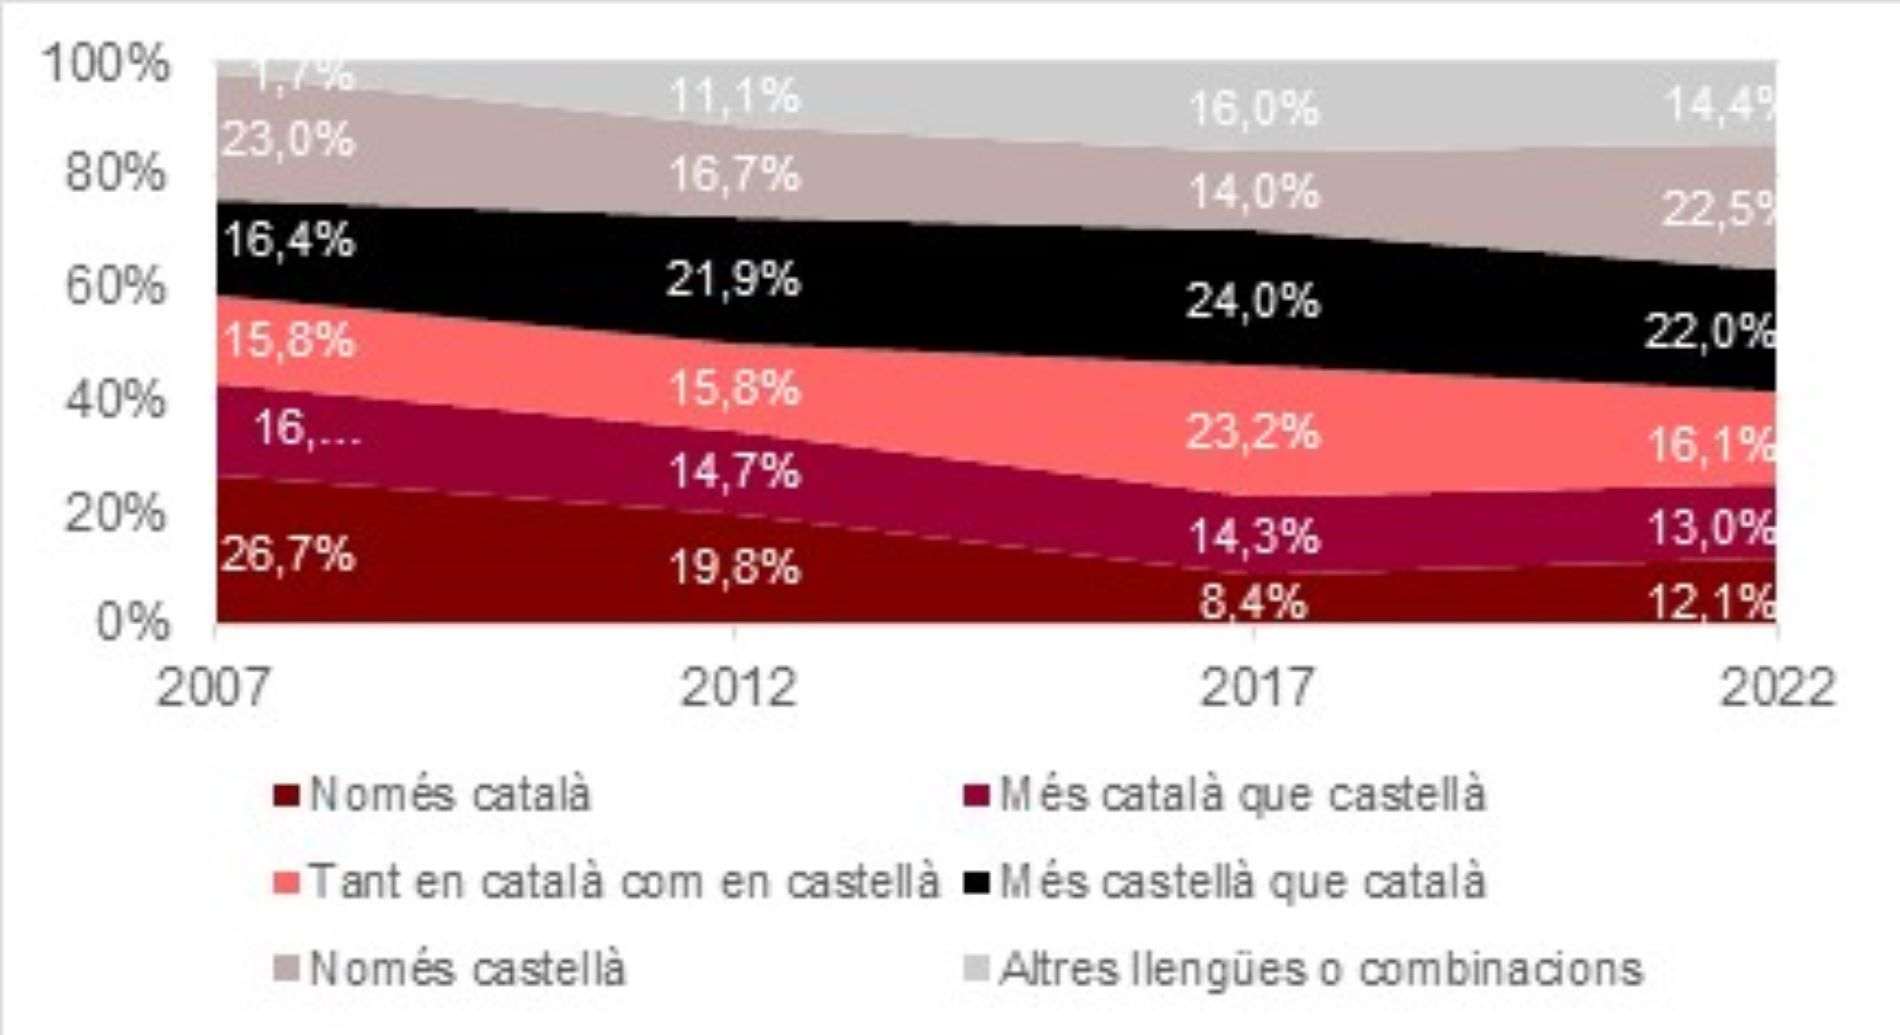 Grafic usos linguistics catala jóvenes / Departamento derechos sociales